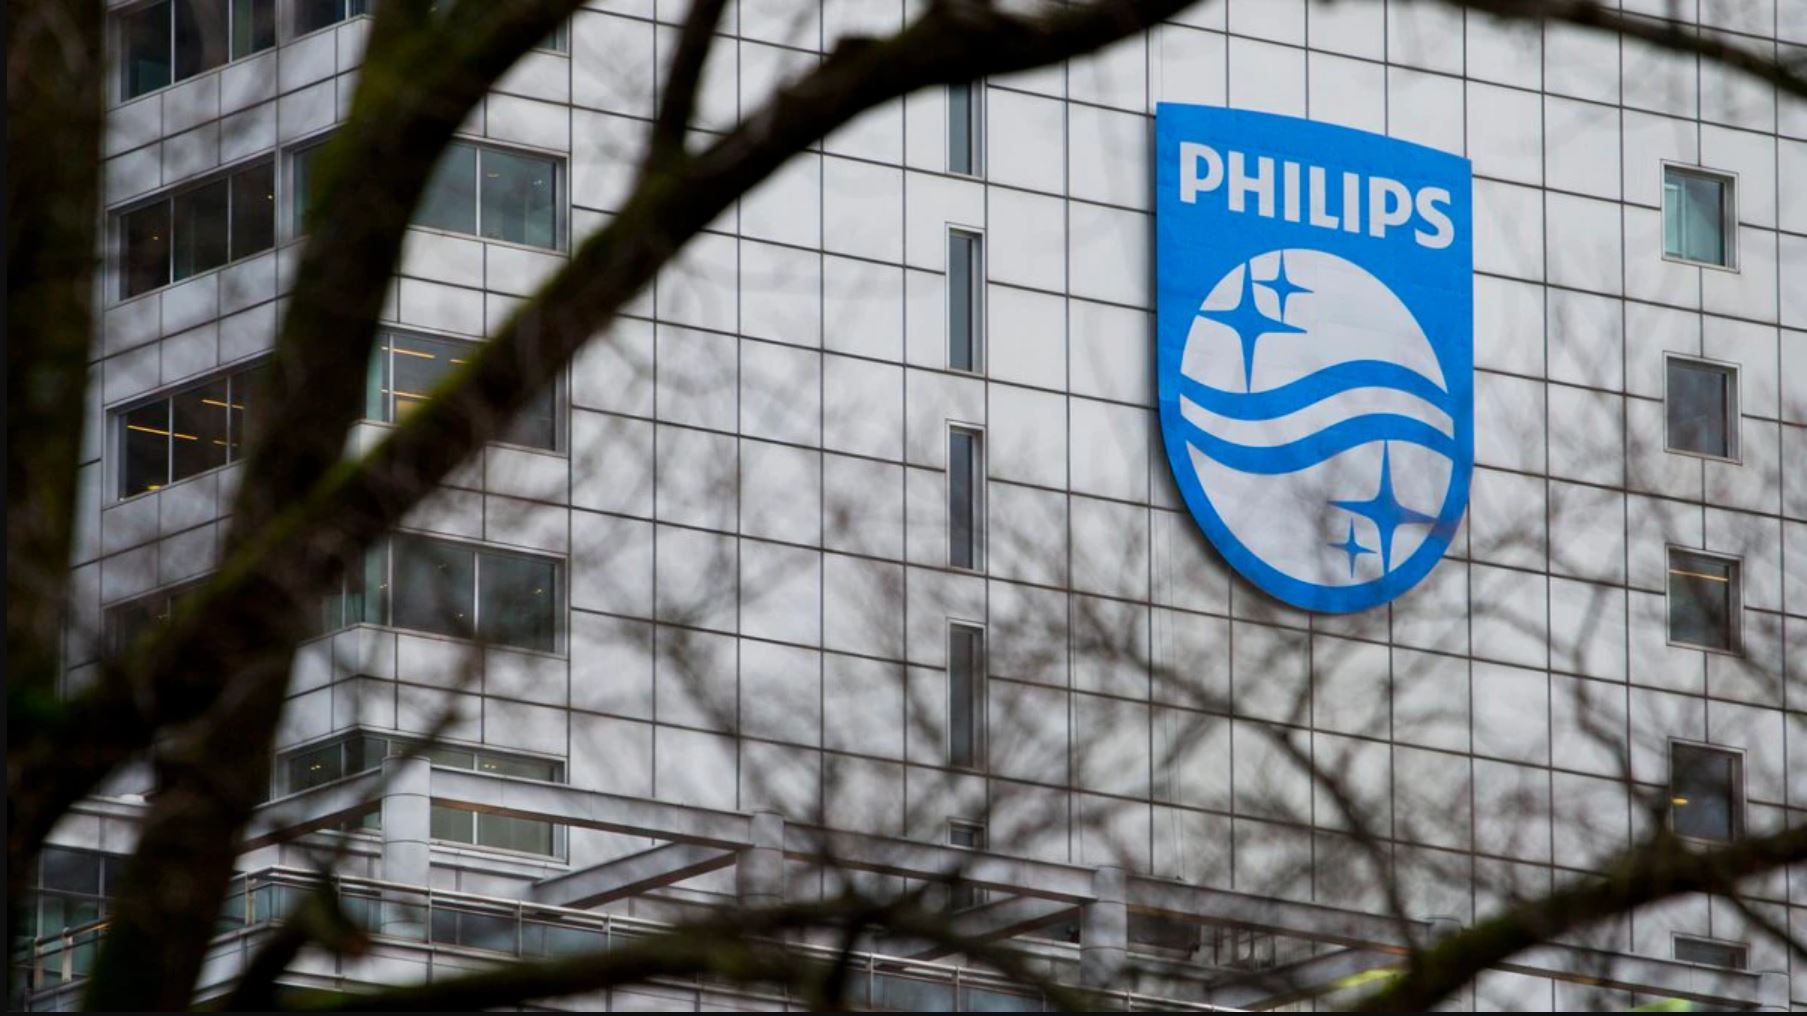 Philips solunum cihazları